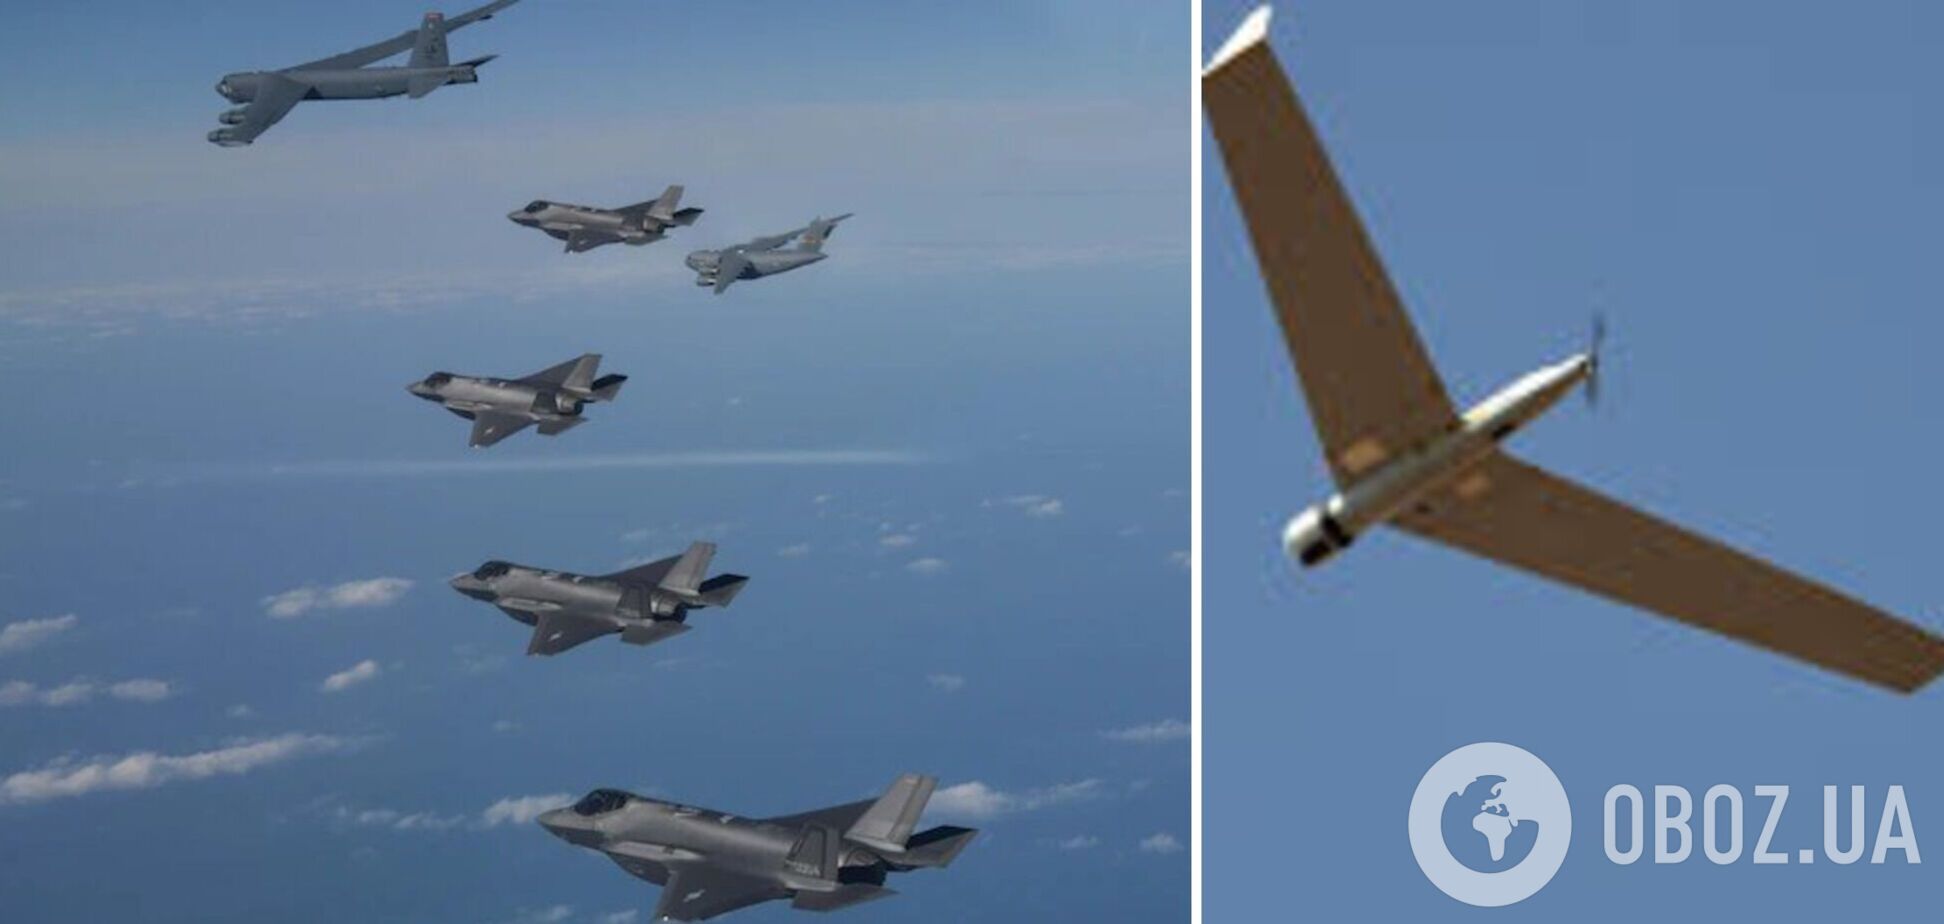 Безпілотники КНДР порушили повітряний простір Південної Кореї: Сеул підняв у повітря військові літаки